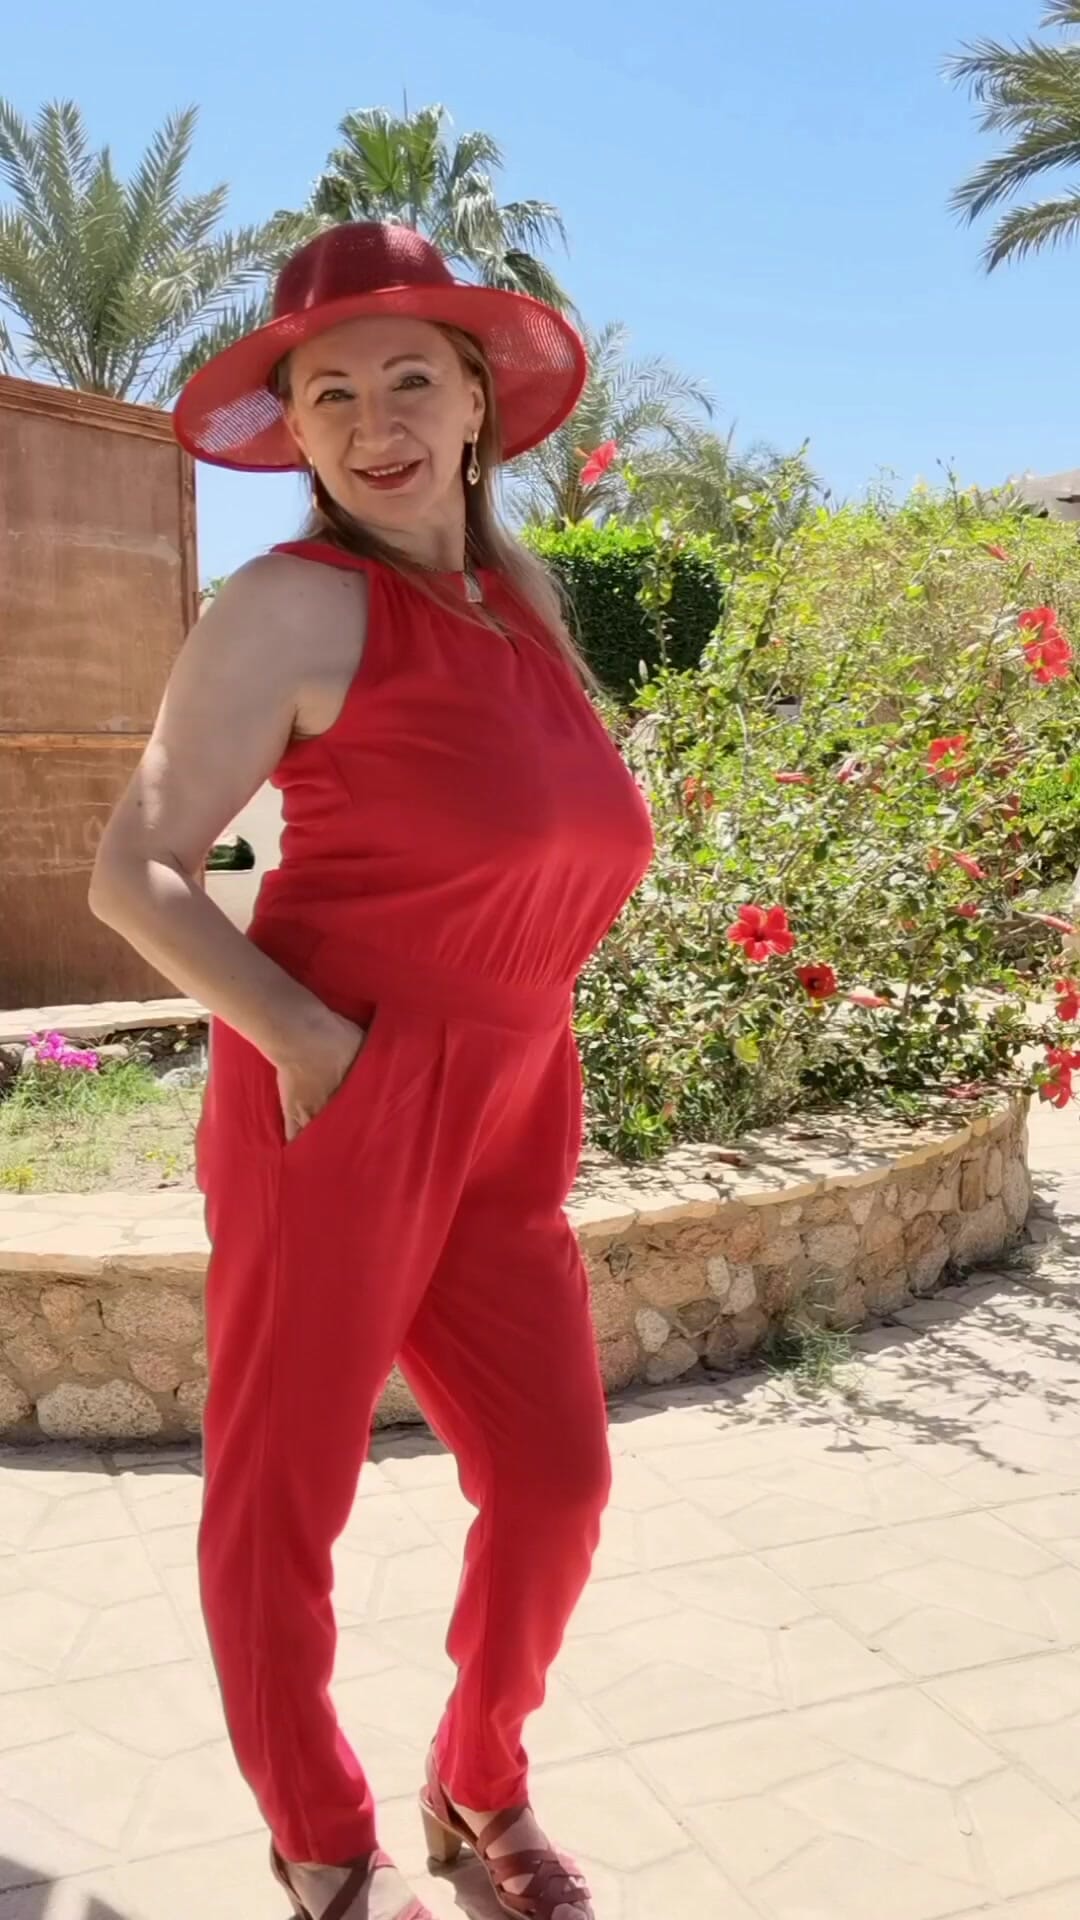 Signora in rosso (Nonna col cappello)